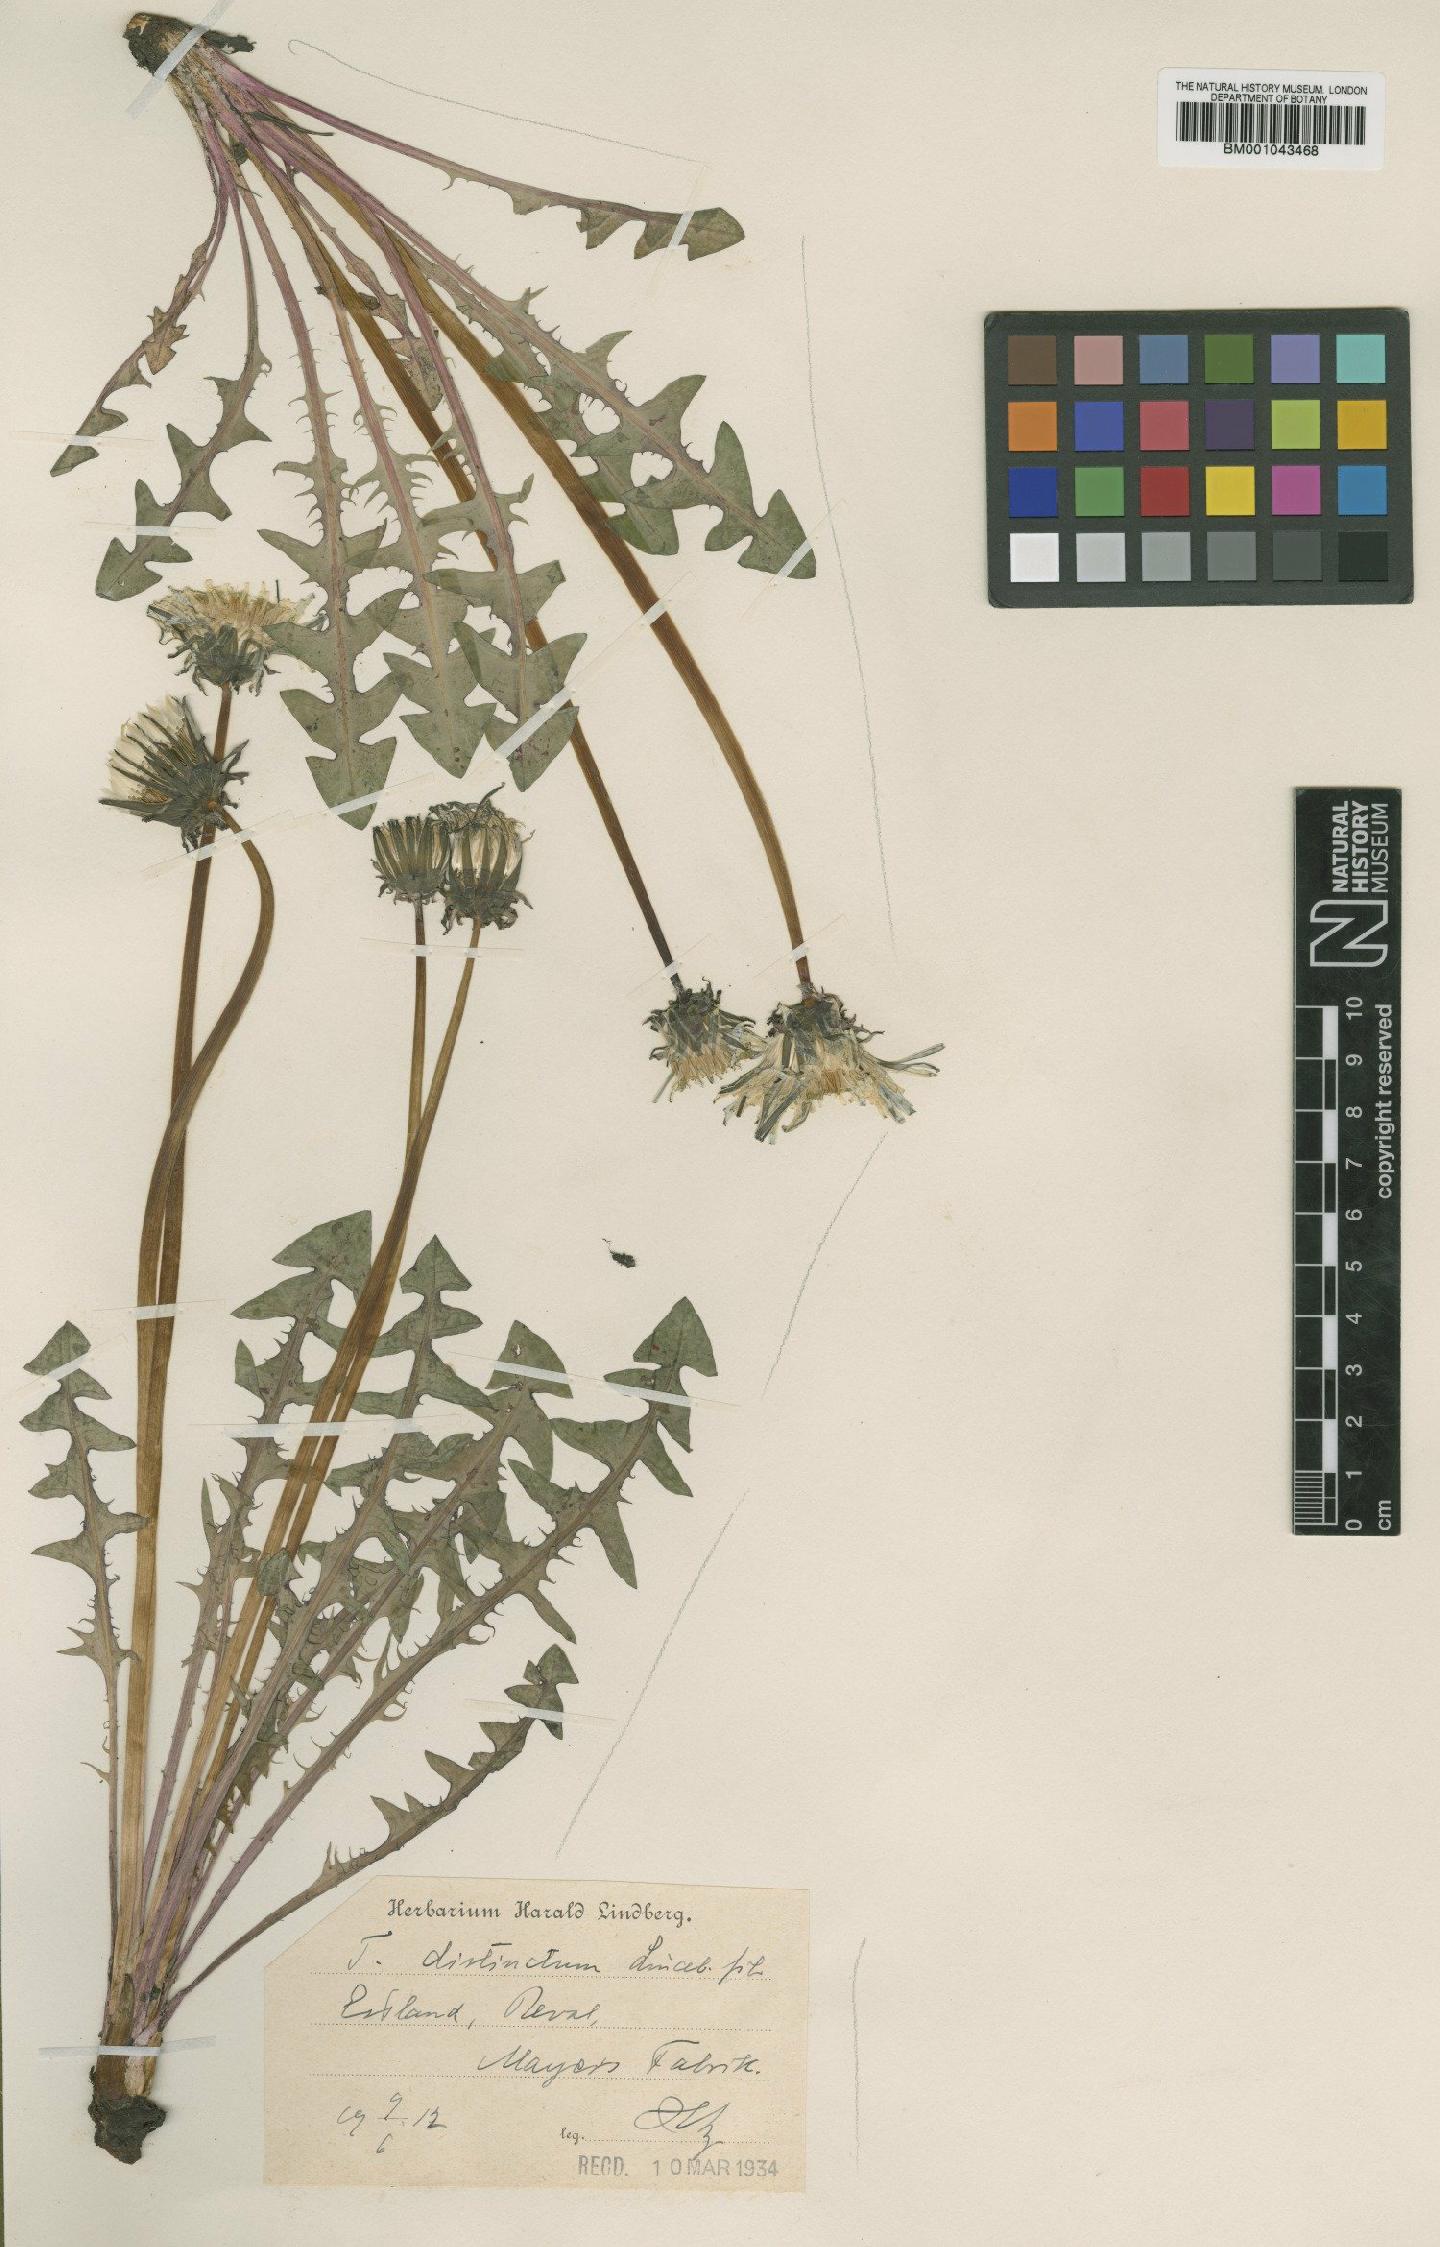 To NHMUK collection (Taraxacum distinctum Lindb; Type; NHMUK:ecatalogue:1998379)